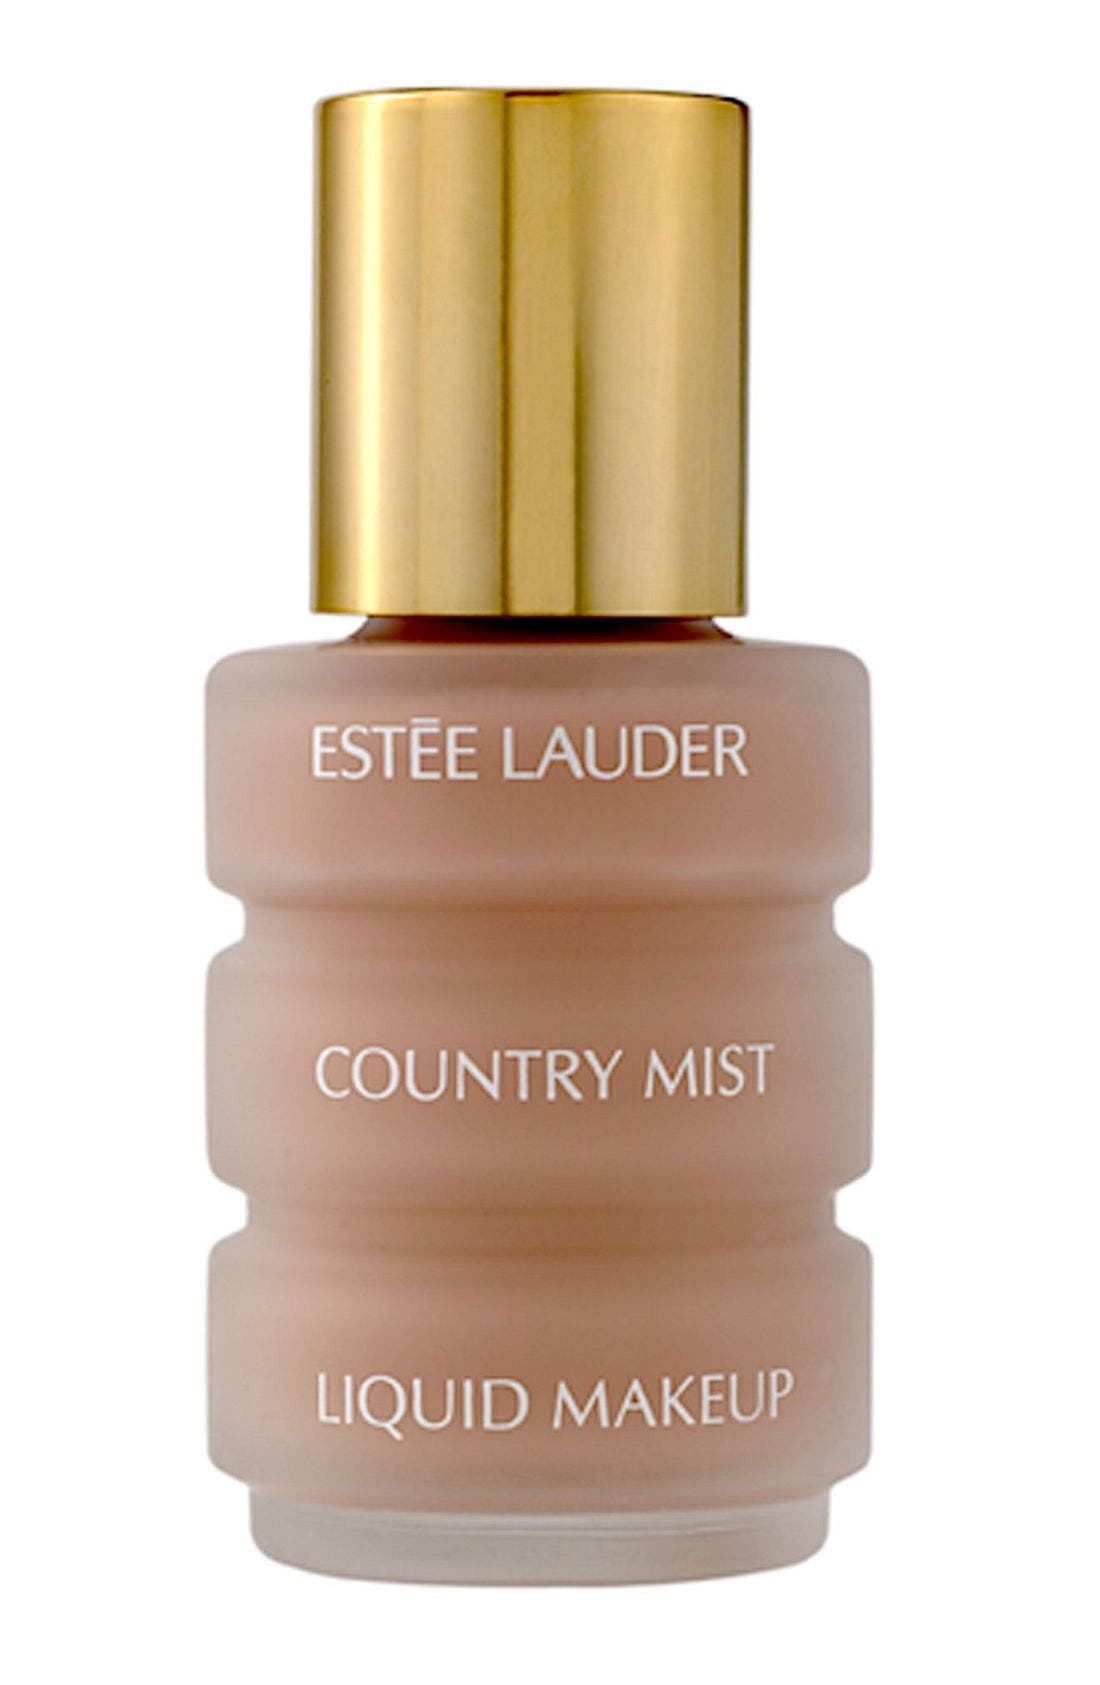 Jacket lauder review estee makeup mist online from facebook